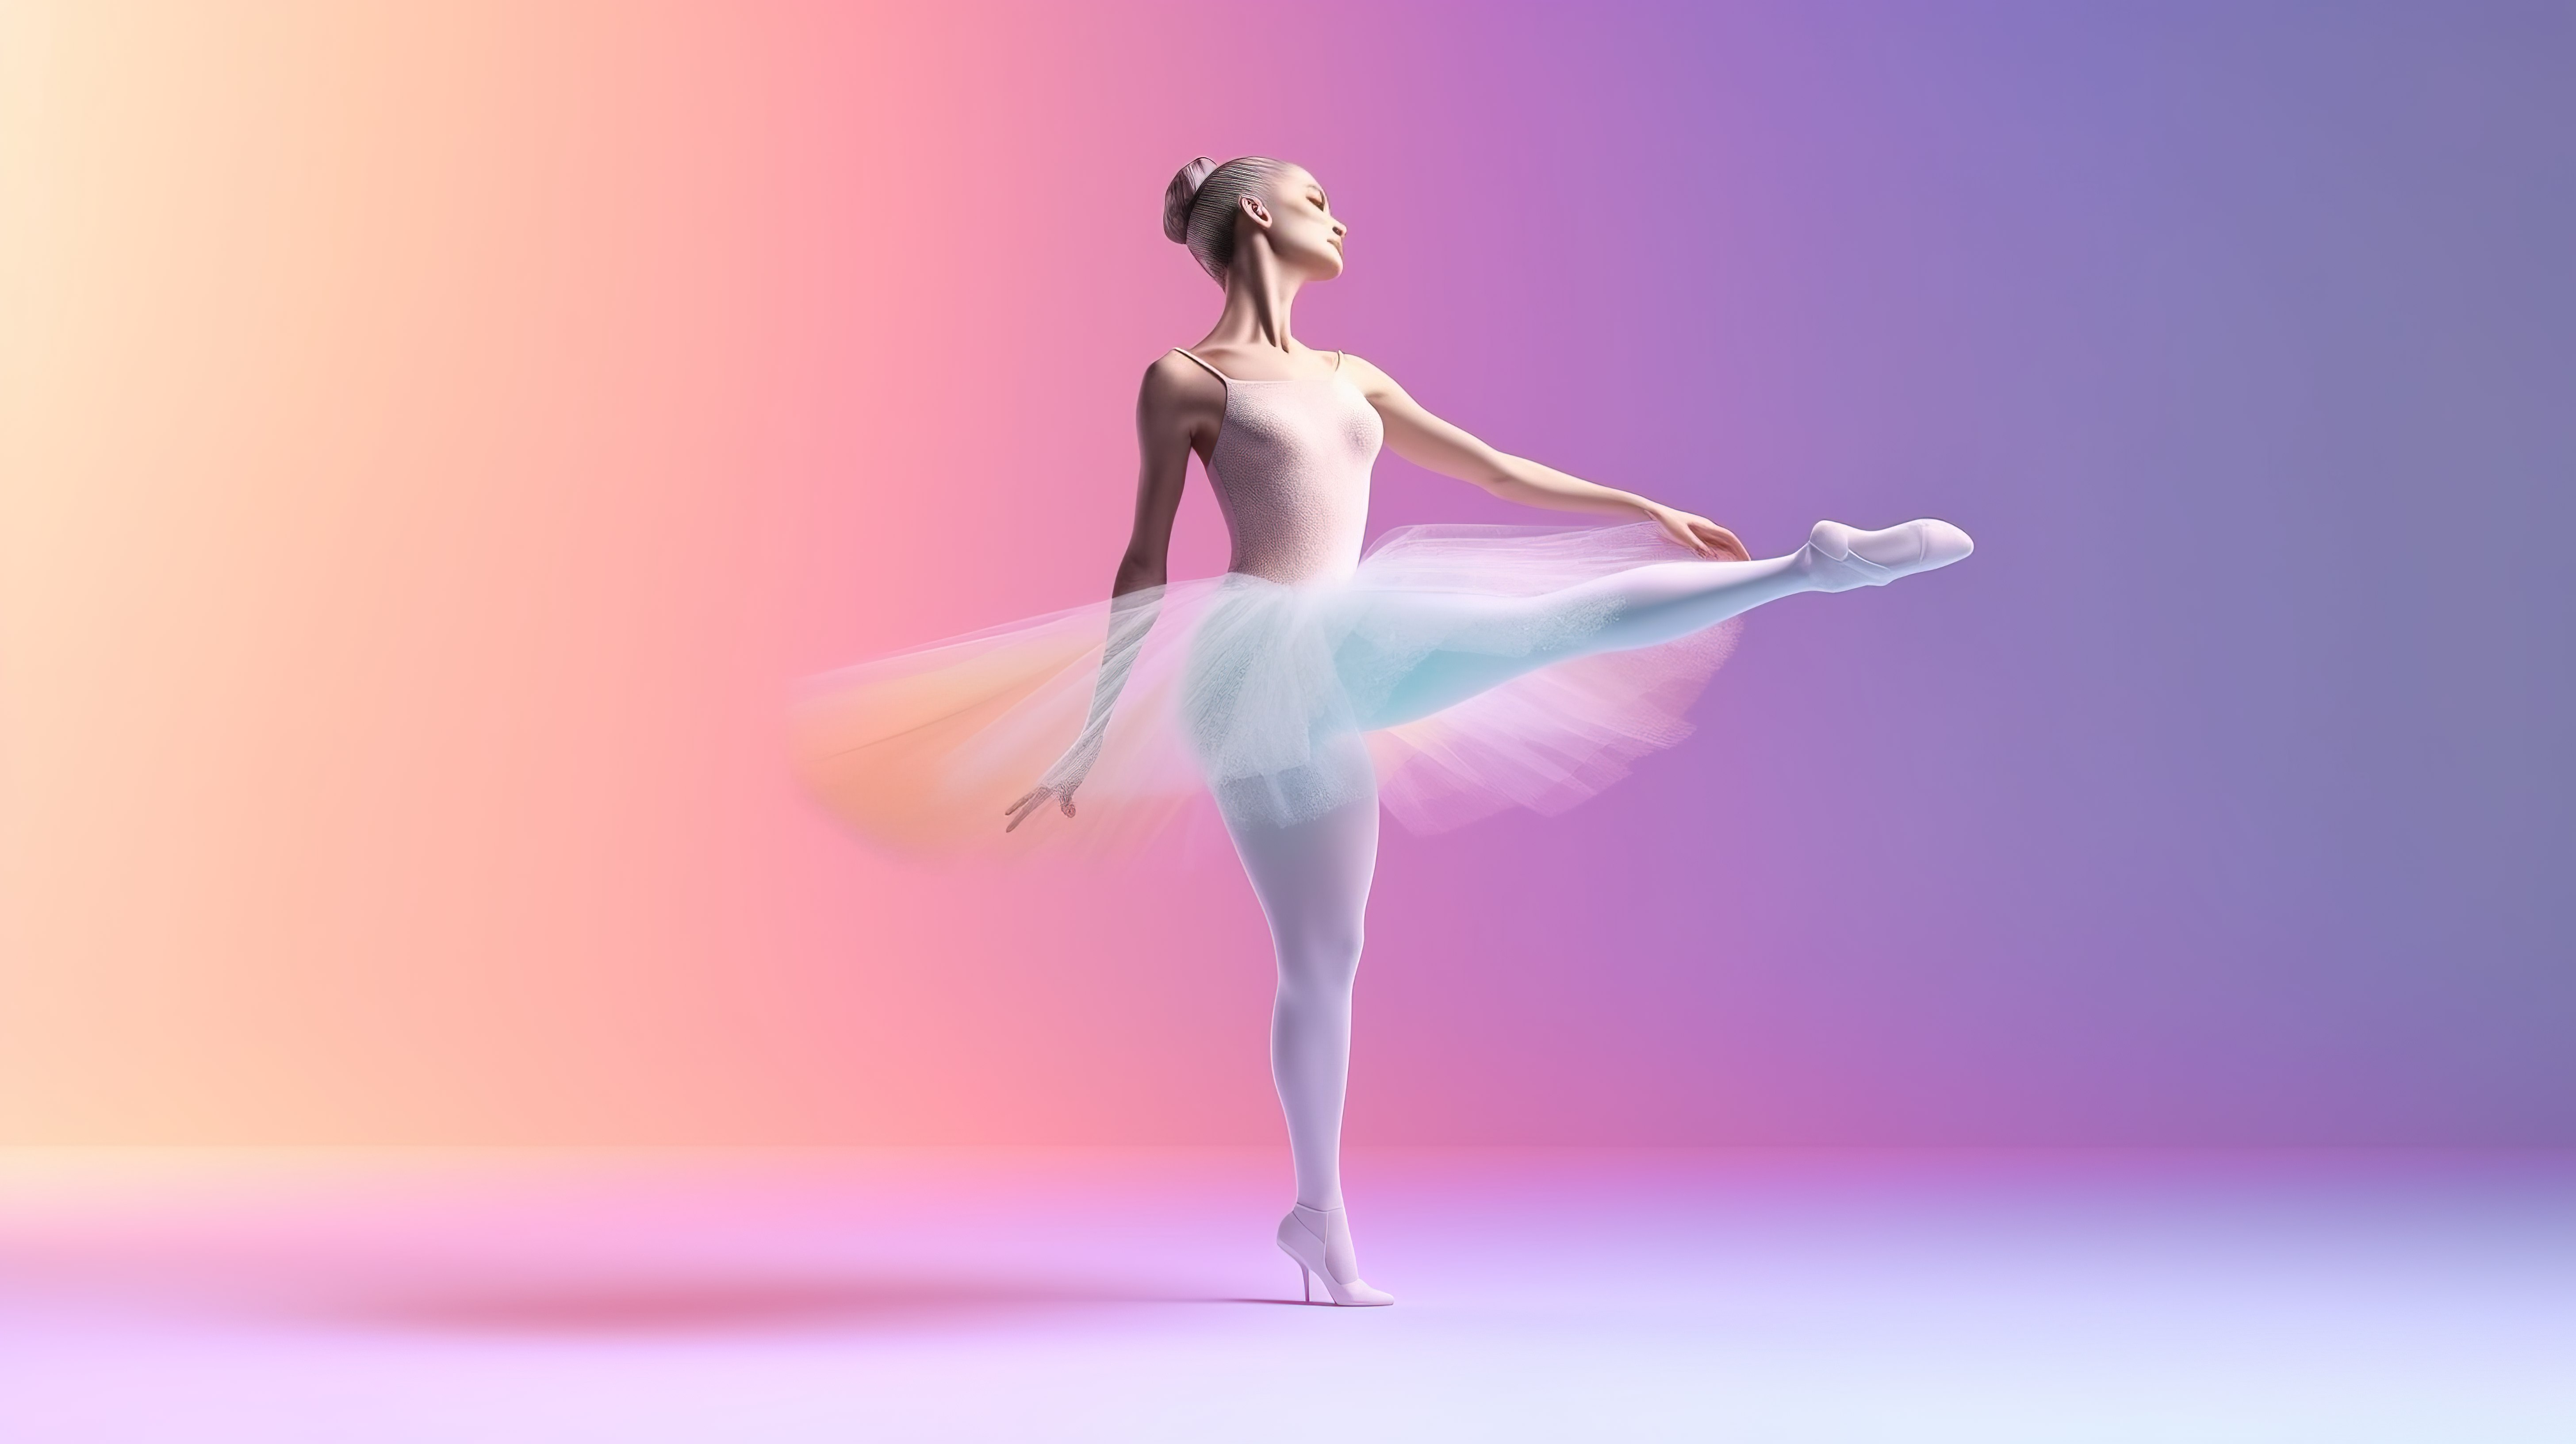 一位女性芭蕾舞演员在运动中的柔和彩色 3D 插图图片